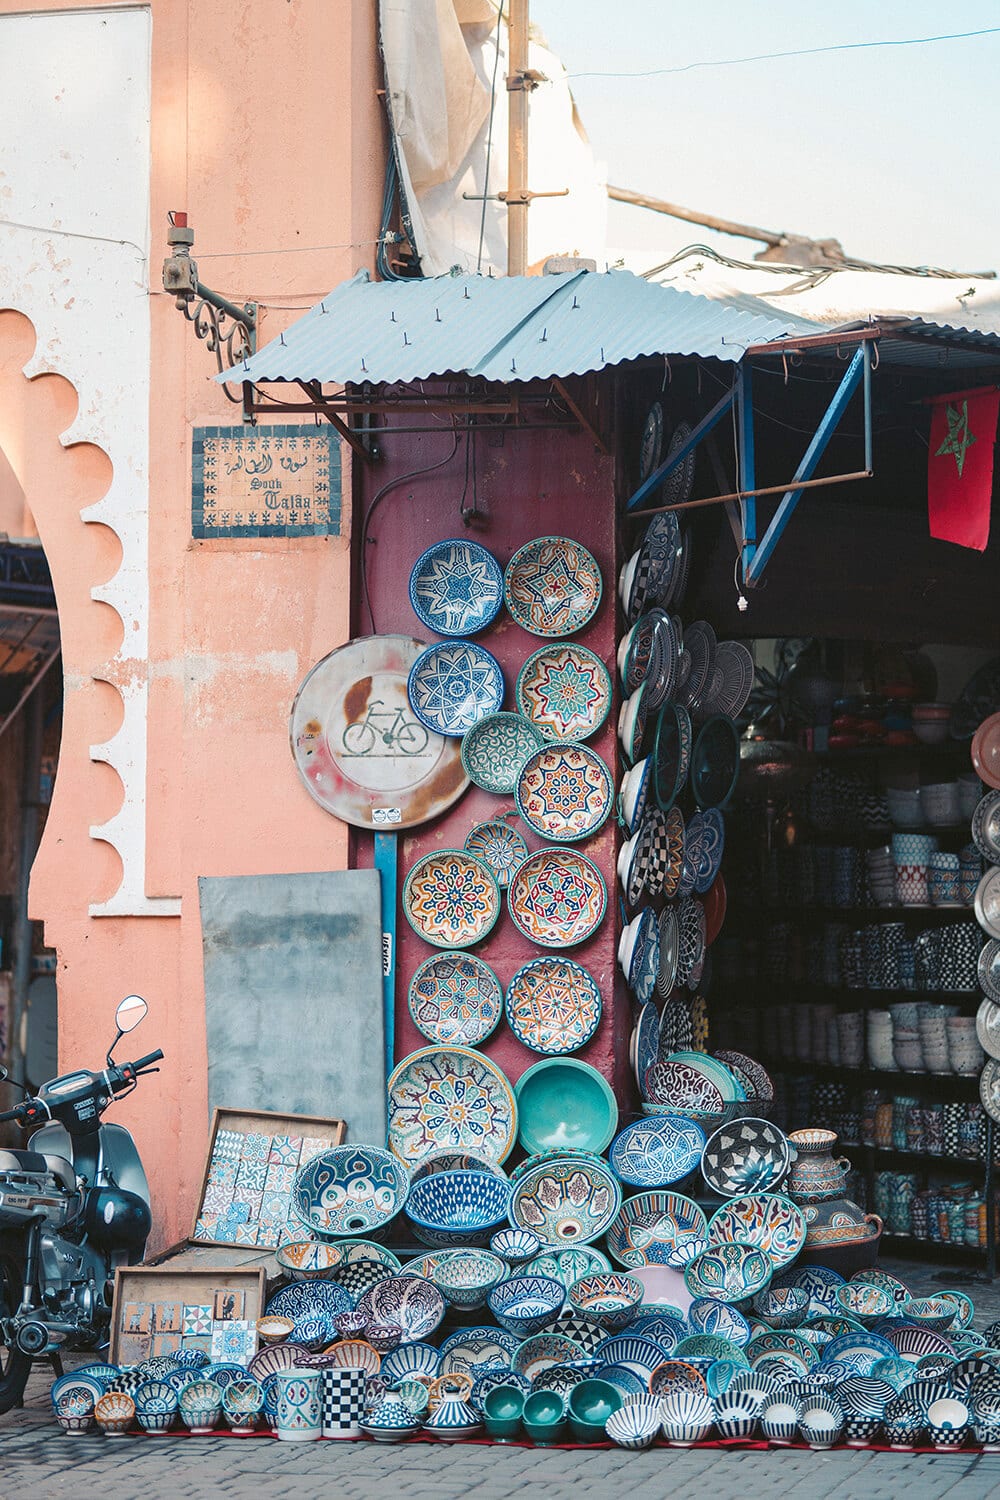 Powiew orientu: styl marokański we wnętrzach